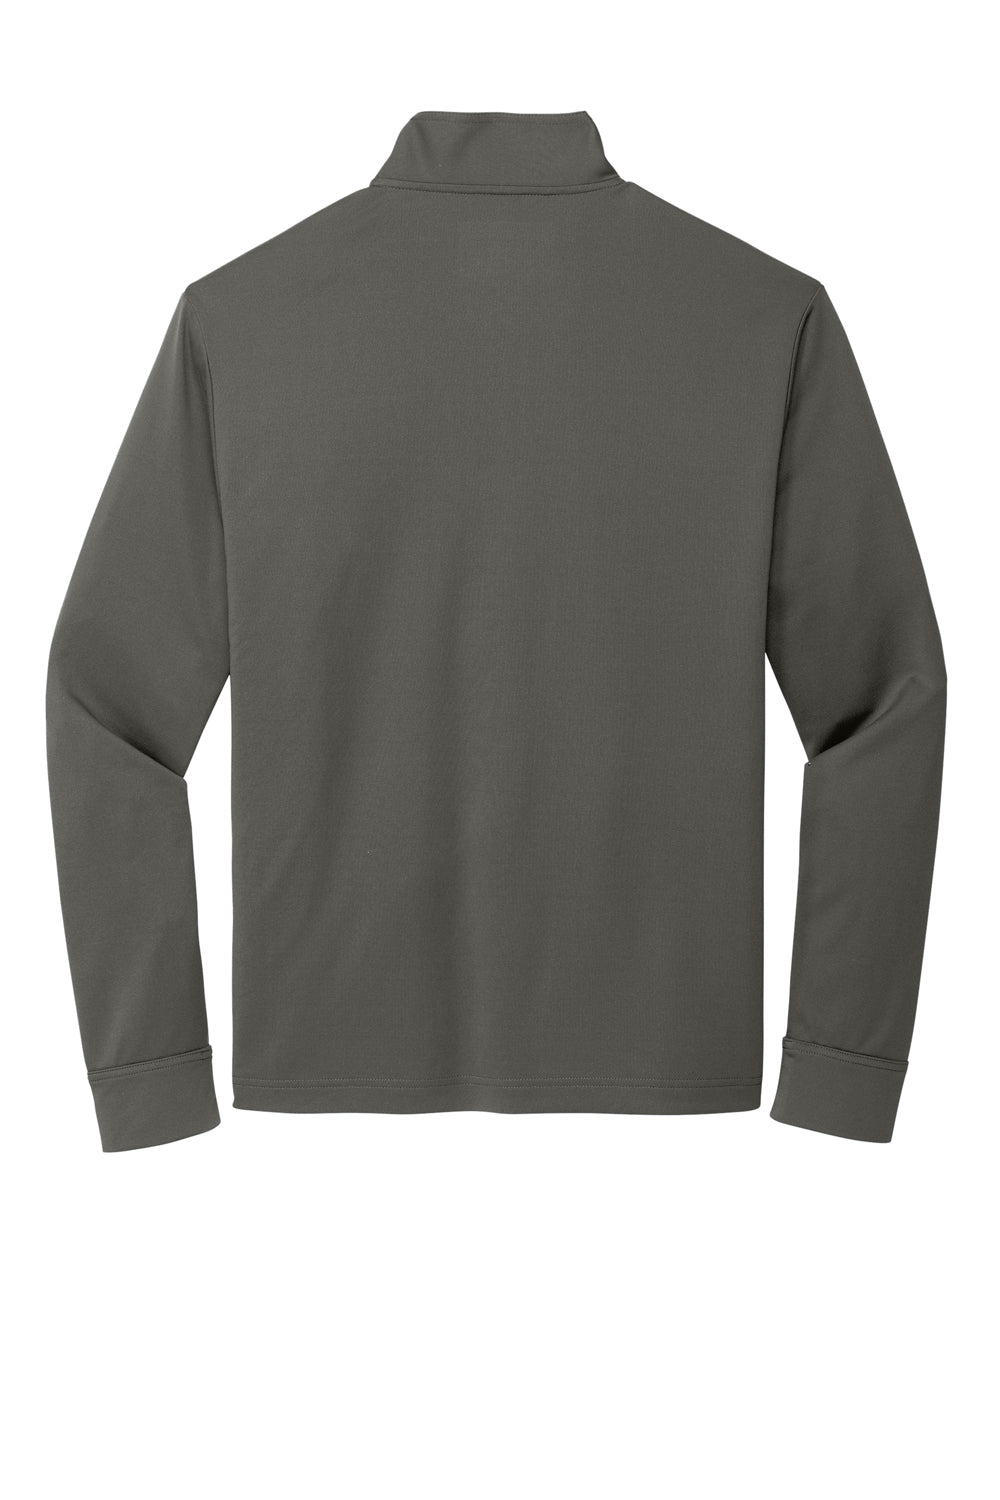 Port Authority K865 C-Free 1/4 Zip Sweatshirt Steel Grey Flat Back